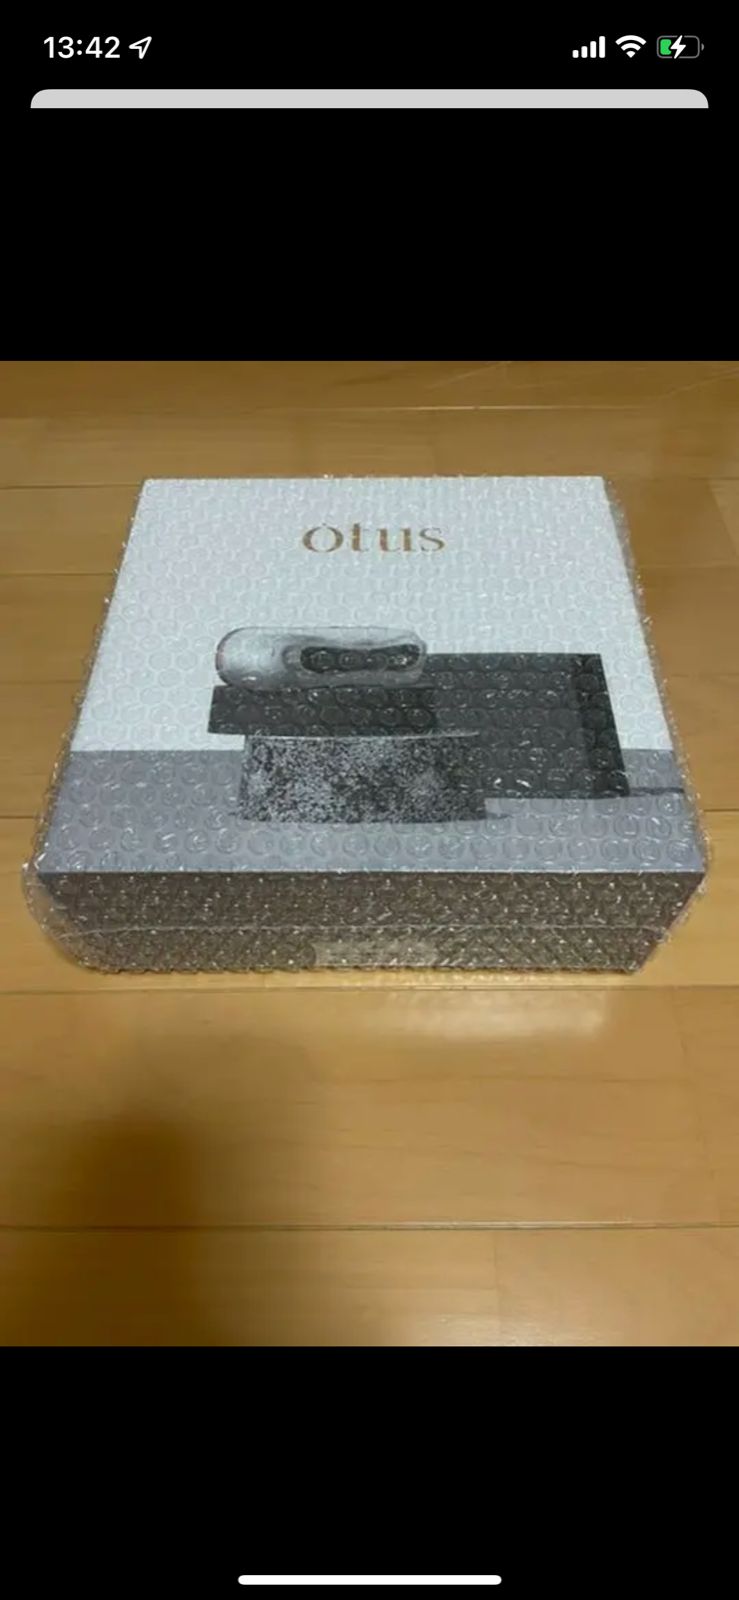 視力回復トレーニング機器 Otus（オータス） - M.A shop - メルカリ